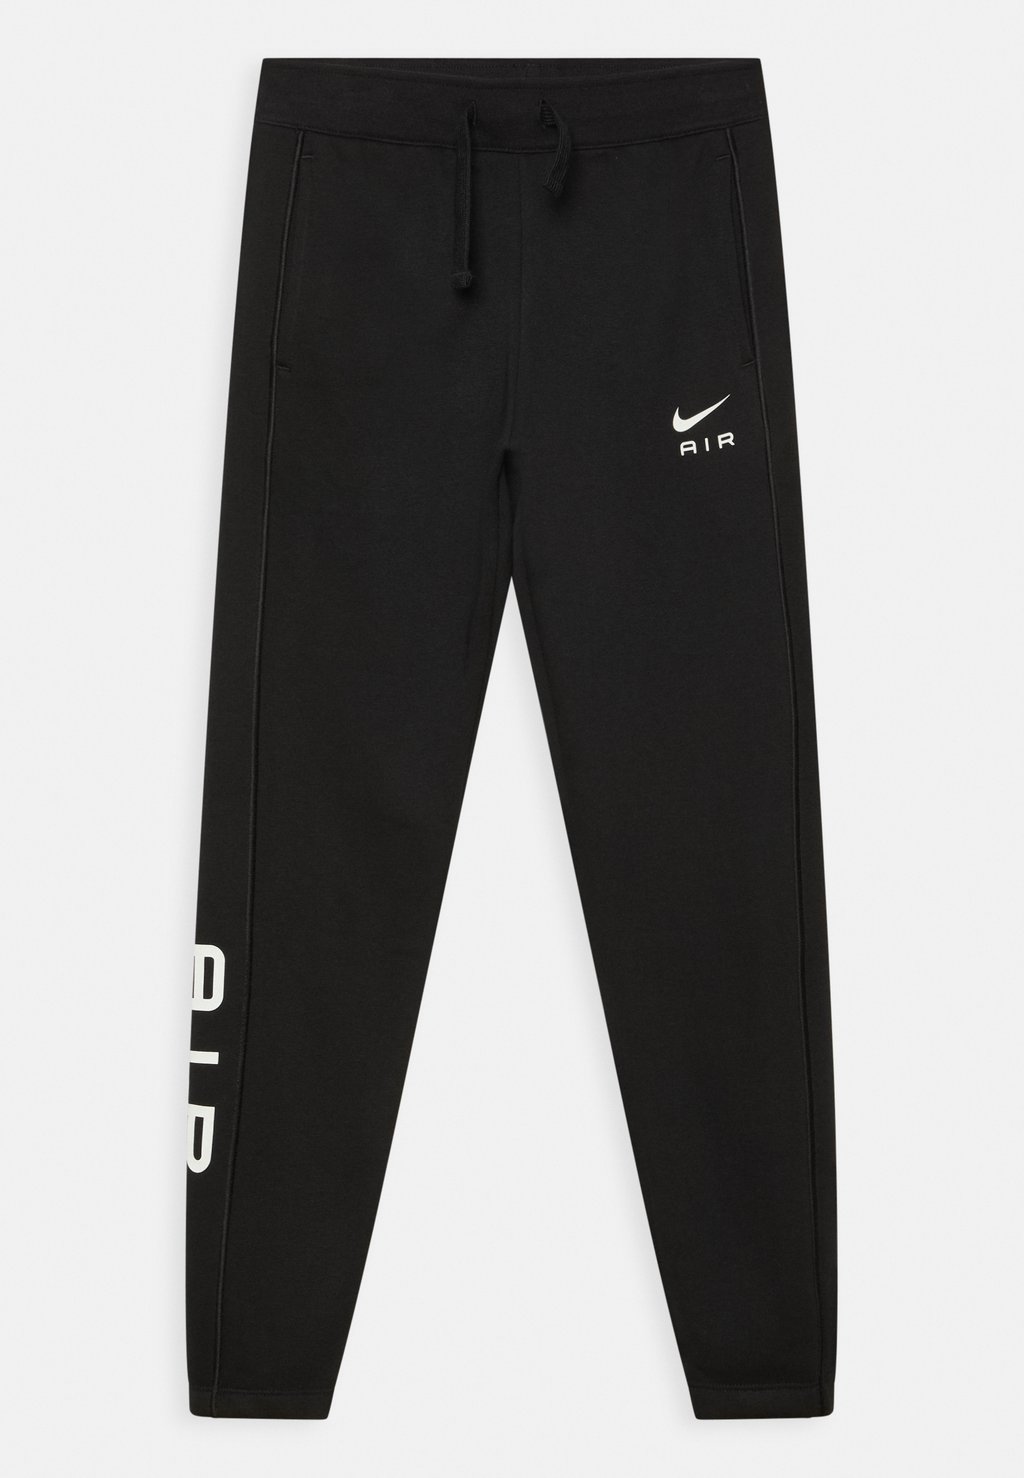 Спортивные брюки PANT UNISEX Nike Sportswear, черный спортивные брюки pant unisex nike sportswear черный